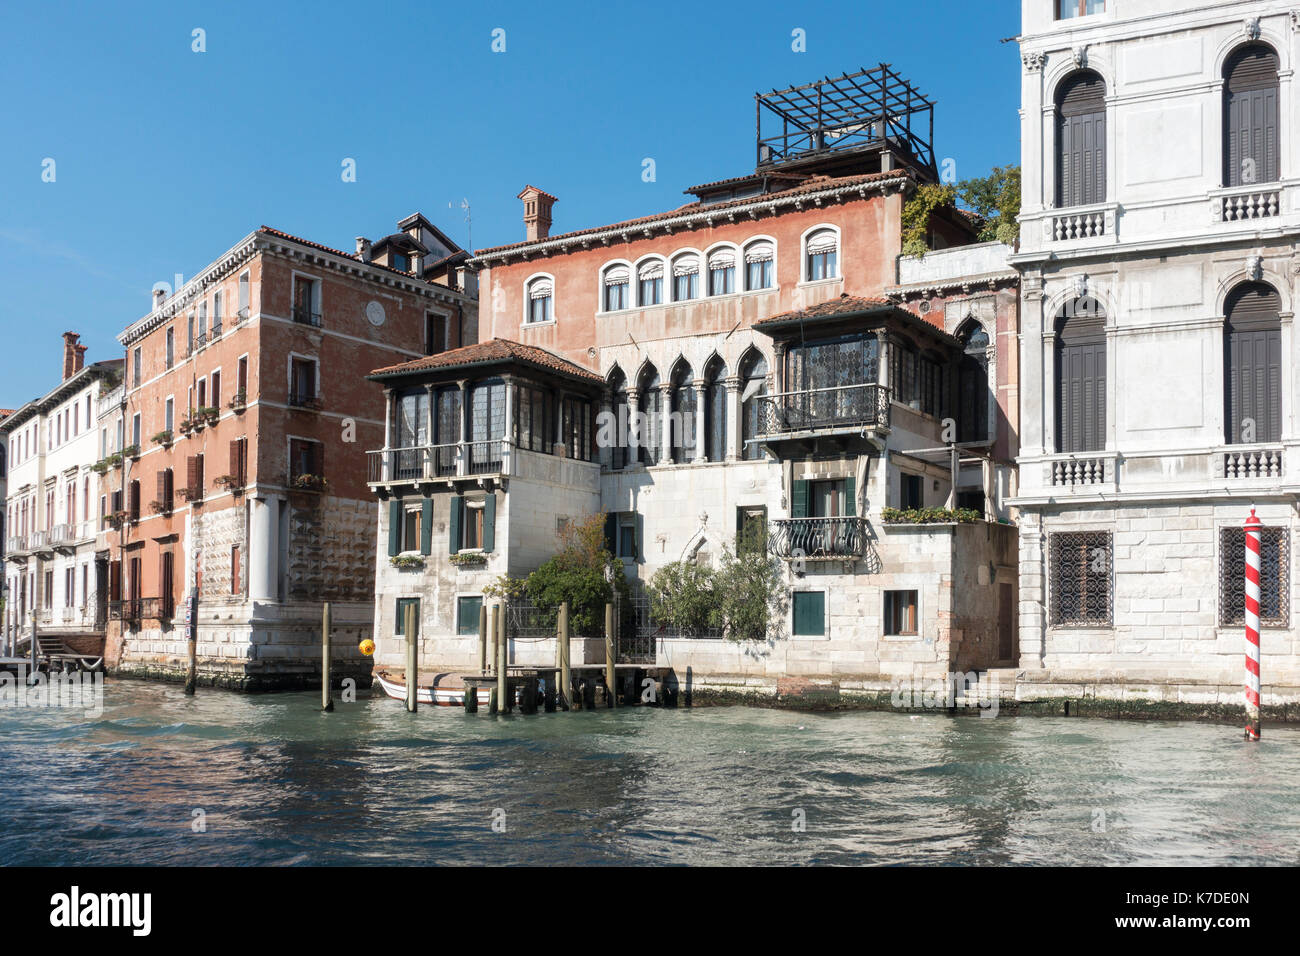 Palazzo falier canossa, résidence de la famille aristocratique de Canossa, canal Grande, quartier San Marco, Venice, Veneto, Italie Banque D'Images